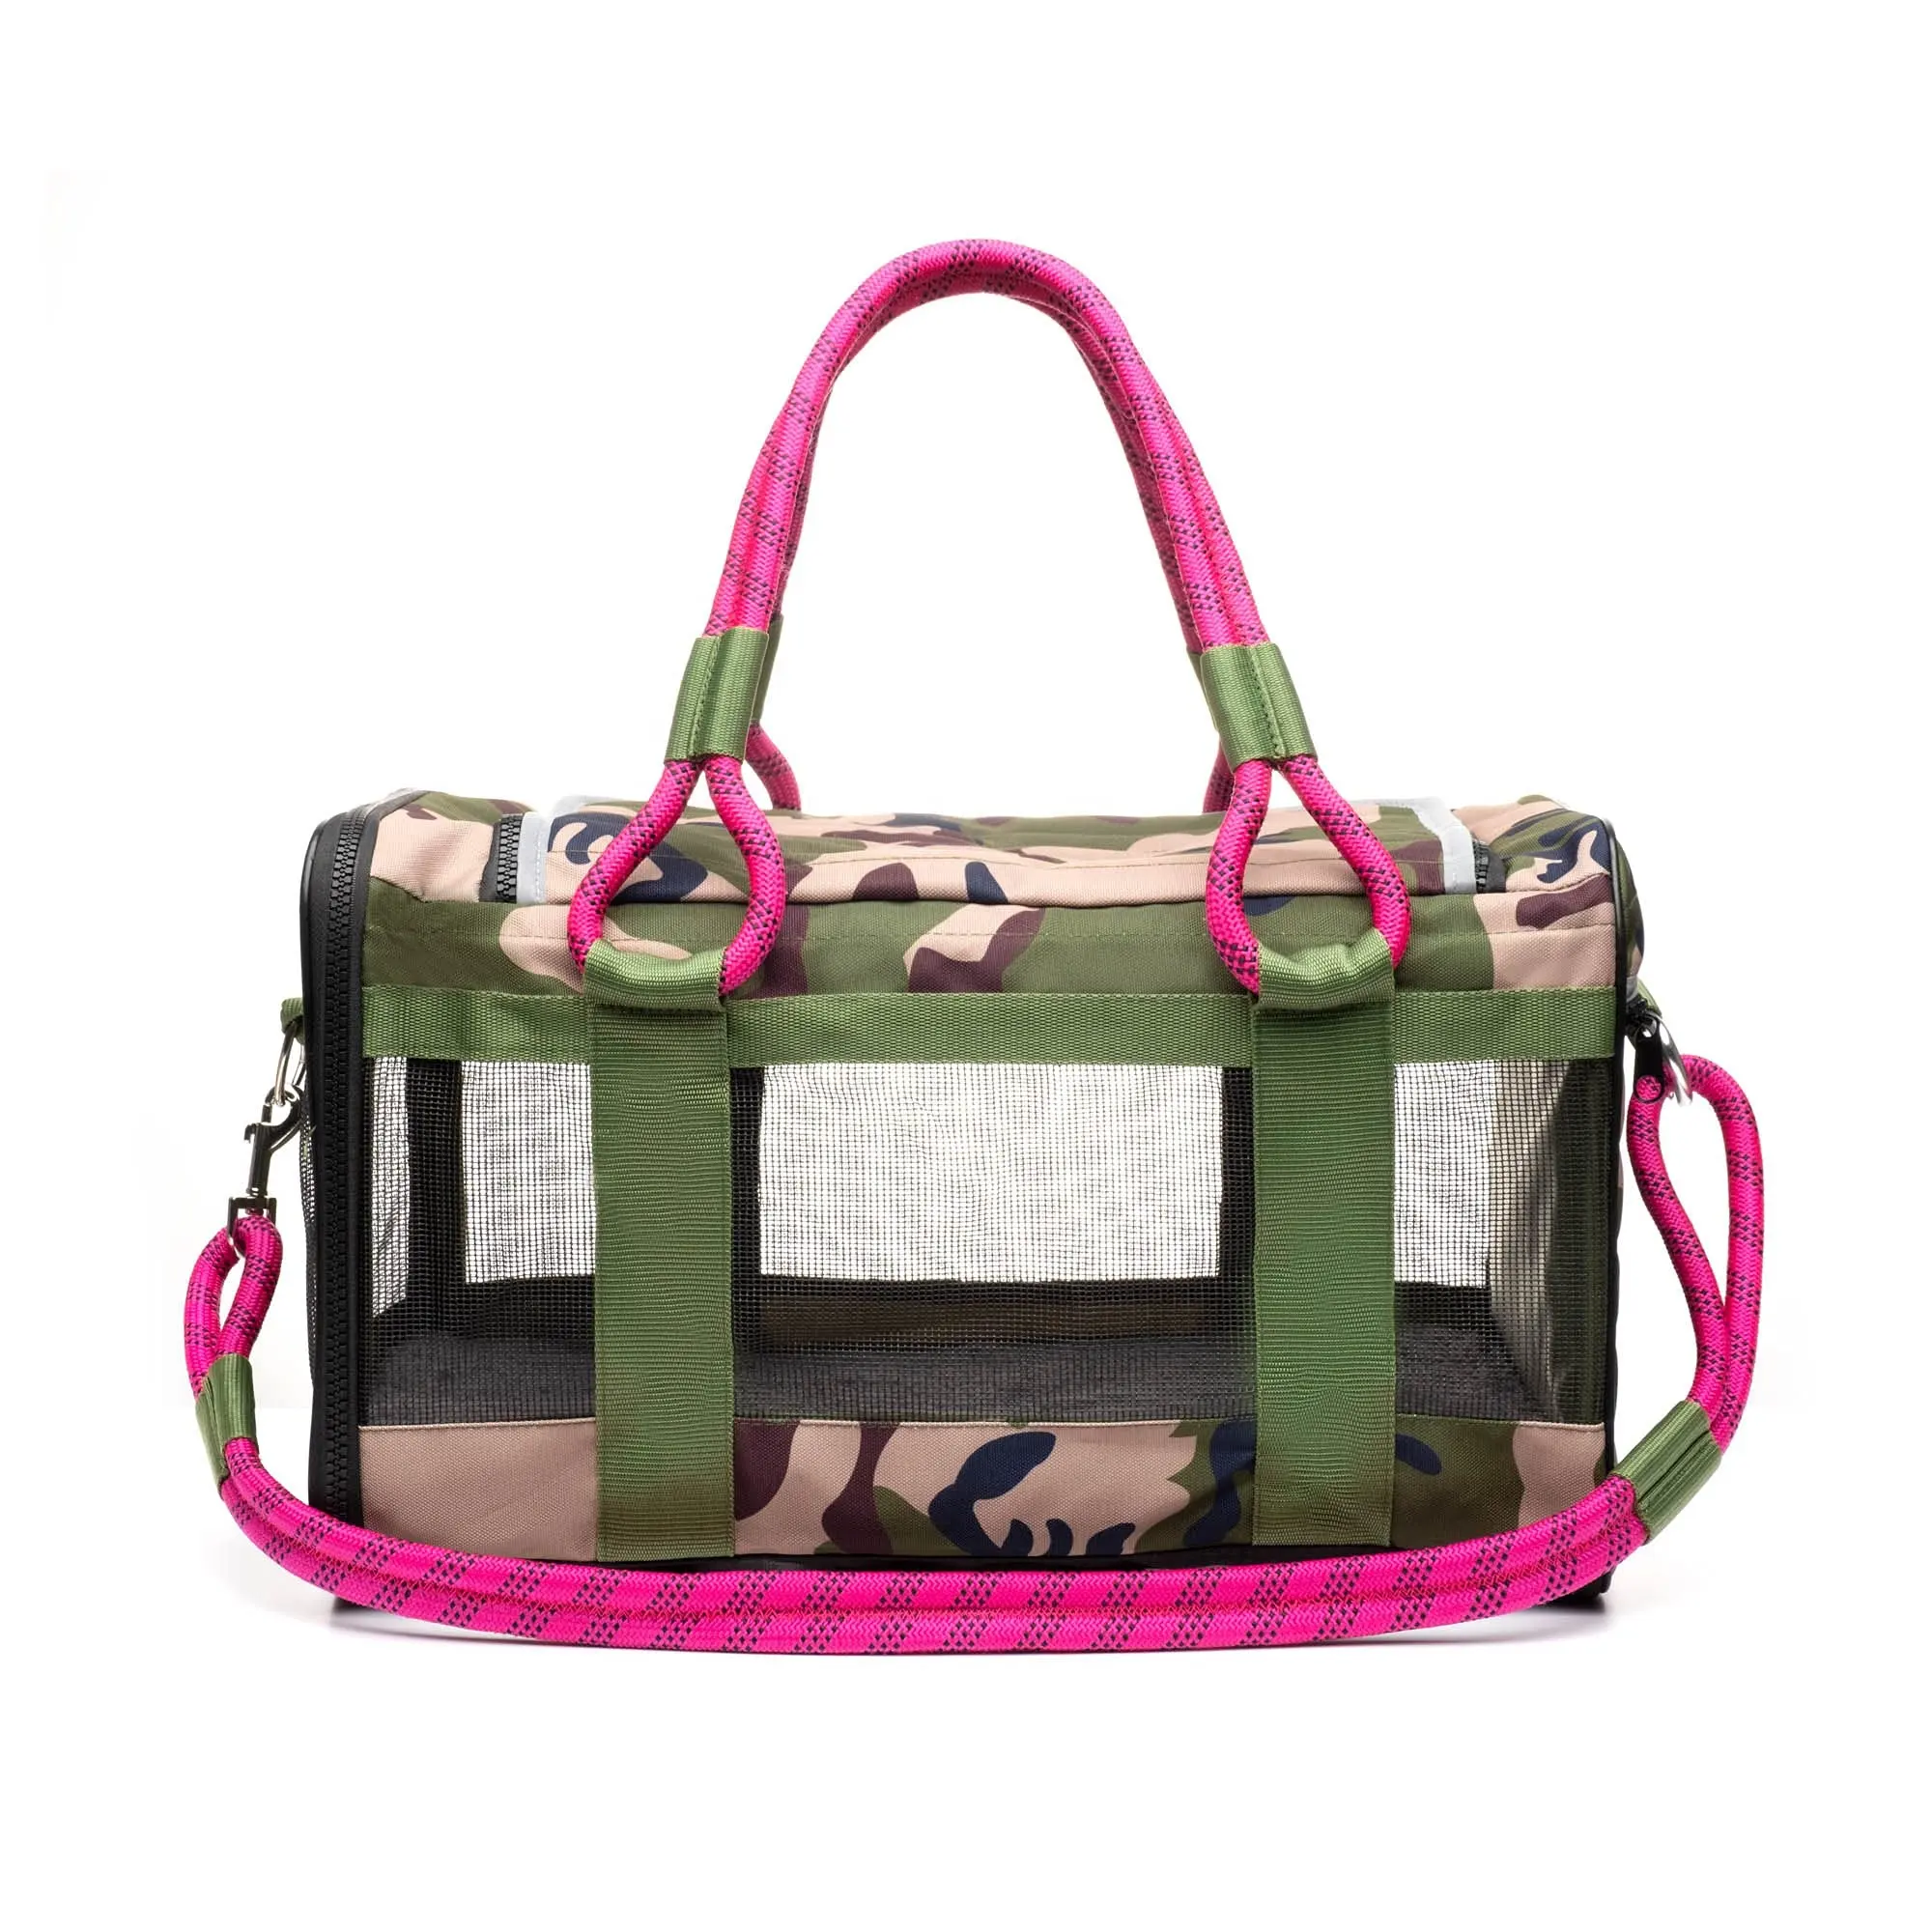 Özel taşınabilir katlanır küçük Tote yumuşak taraflı havayolu onaylı kedi taşıma taşıyıcı çanta seyahat köpek evcil hayvan çantası kadınlar için